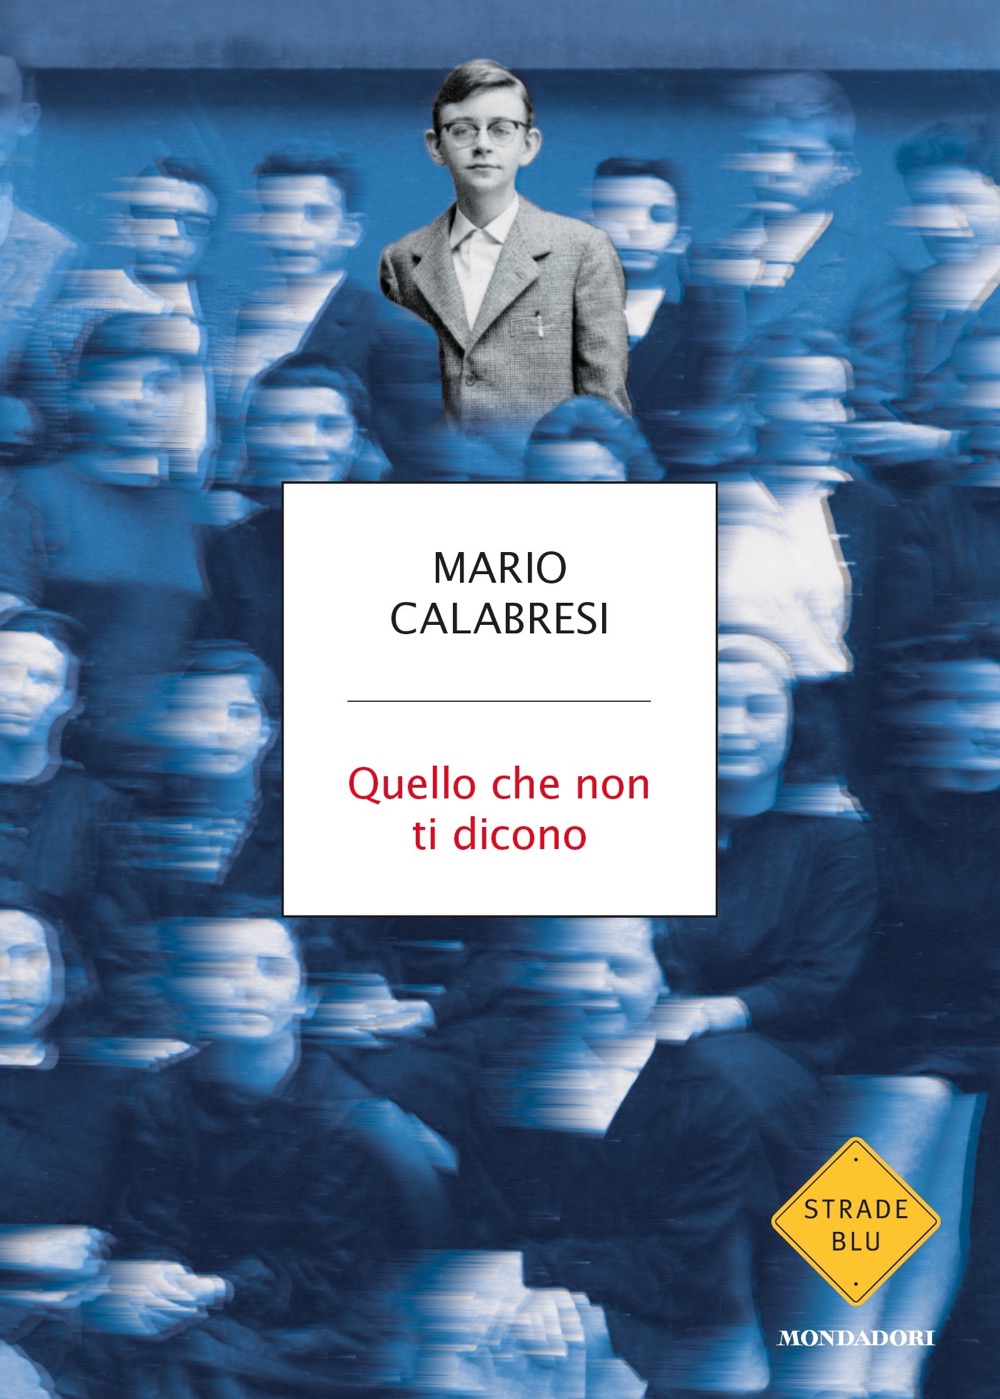 Leggendo in relax (4): “Quello che non ti dicono” di Mario Calabresi